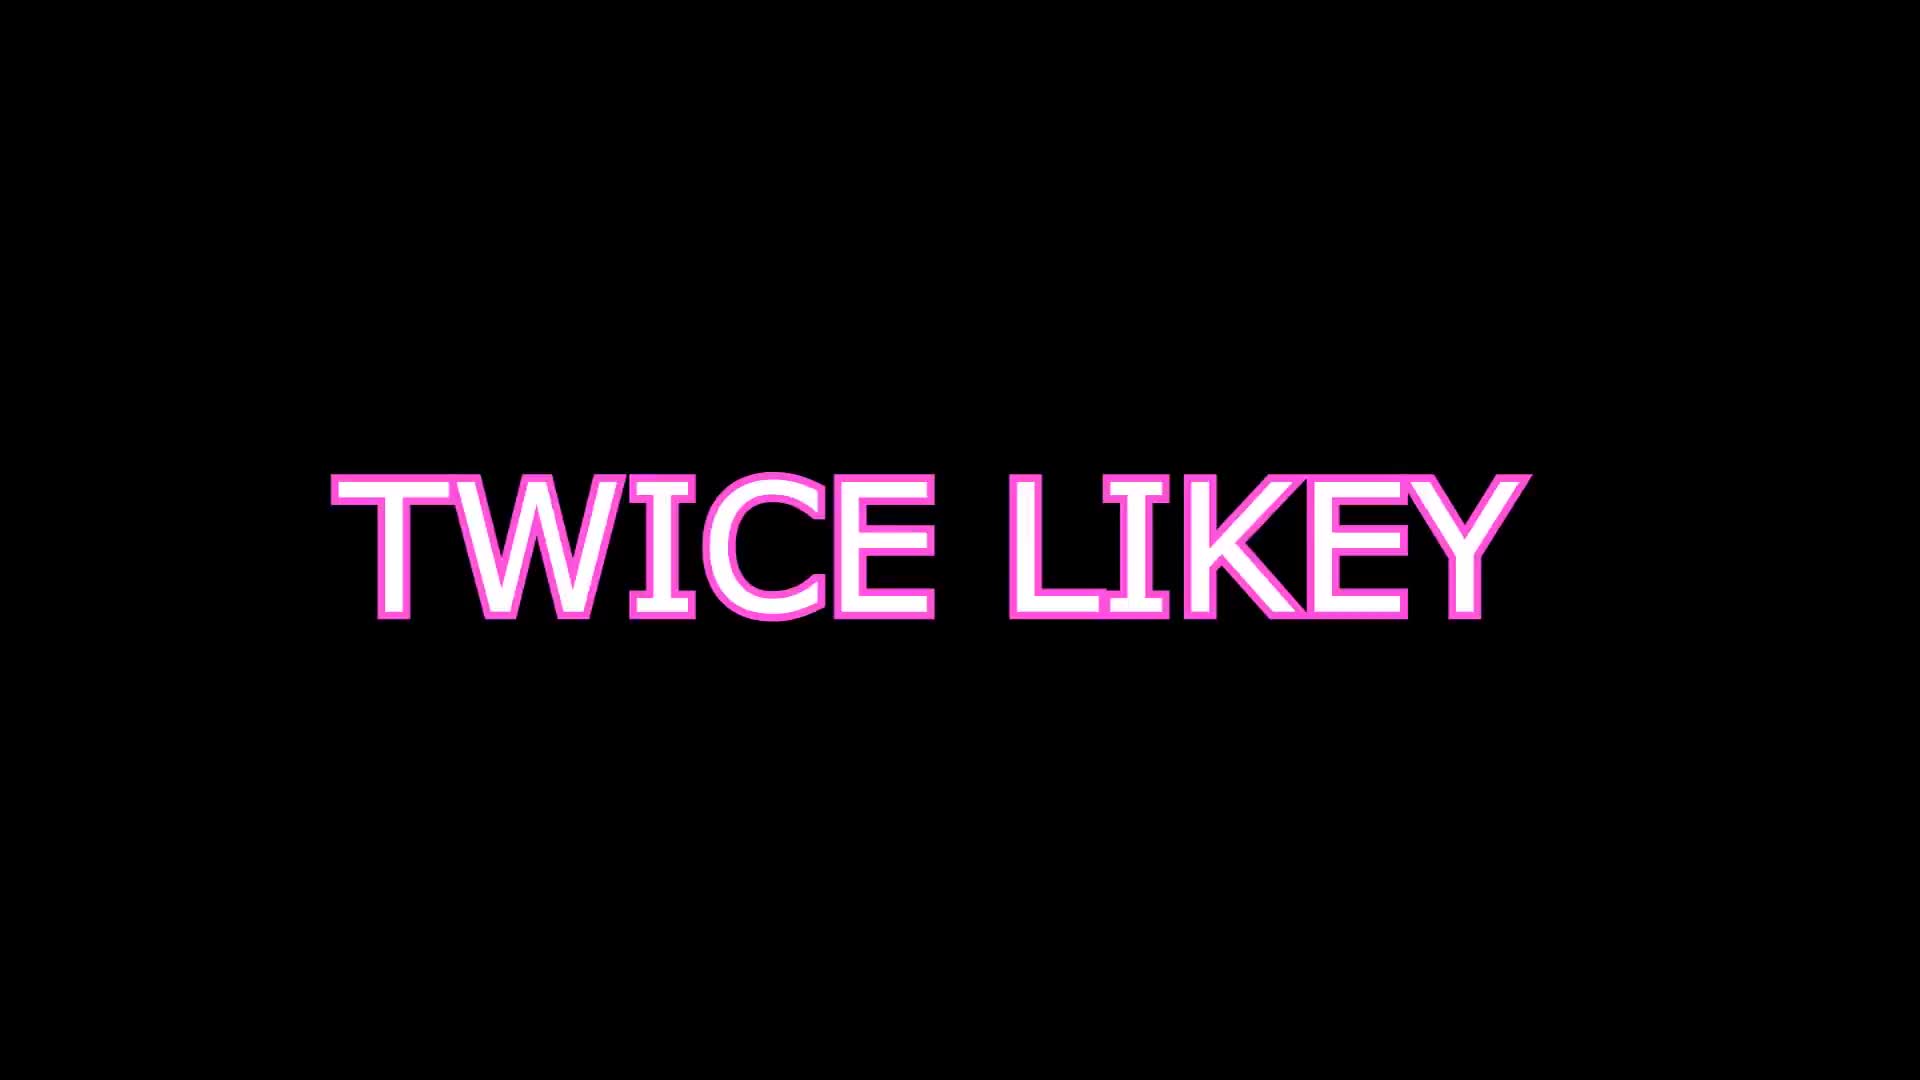 TWICE LIKEY (Tutorial Mirrored) 트와이스 라이키 거울모드 설명강좌 WAVEYA MiU